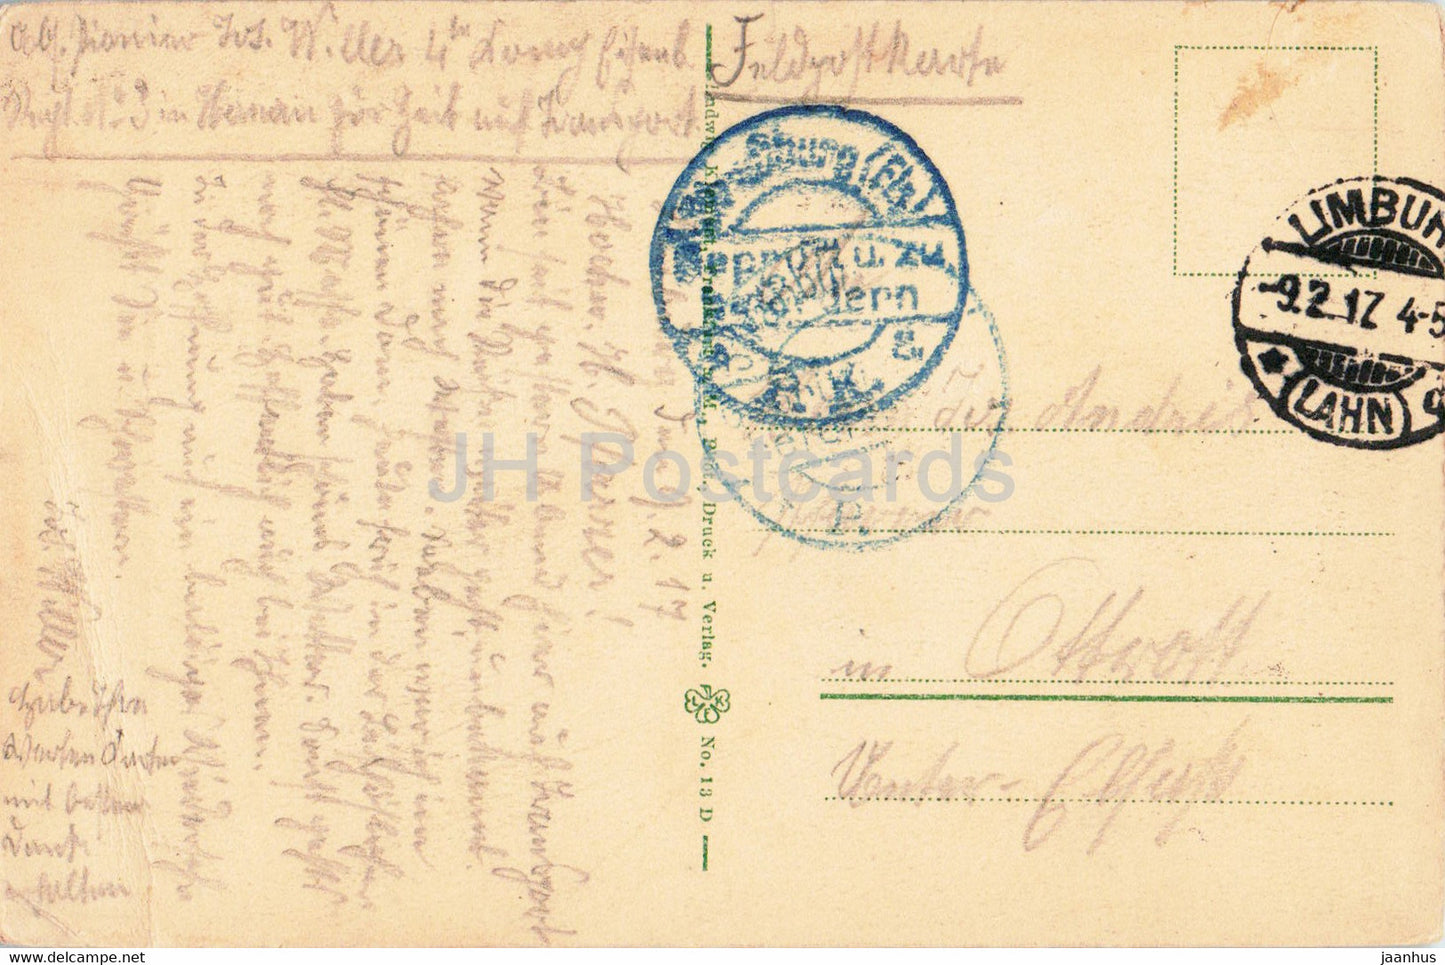 Limburg a L - Dom - Blick vom Querschiff zum Chor - Dom - Feldpost - alte Postkarte - 1917 - Deutschland - gebraucht